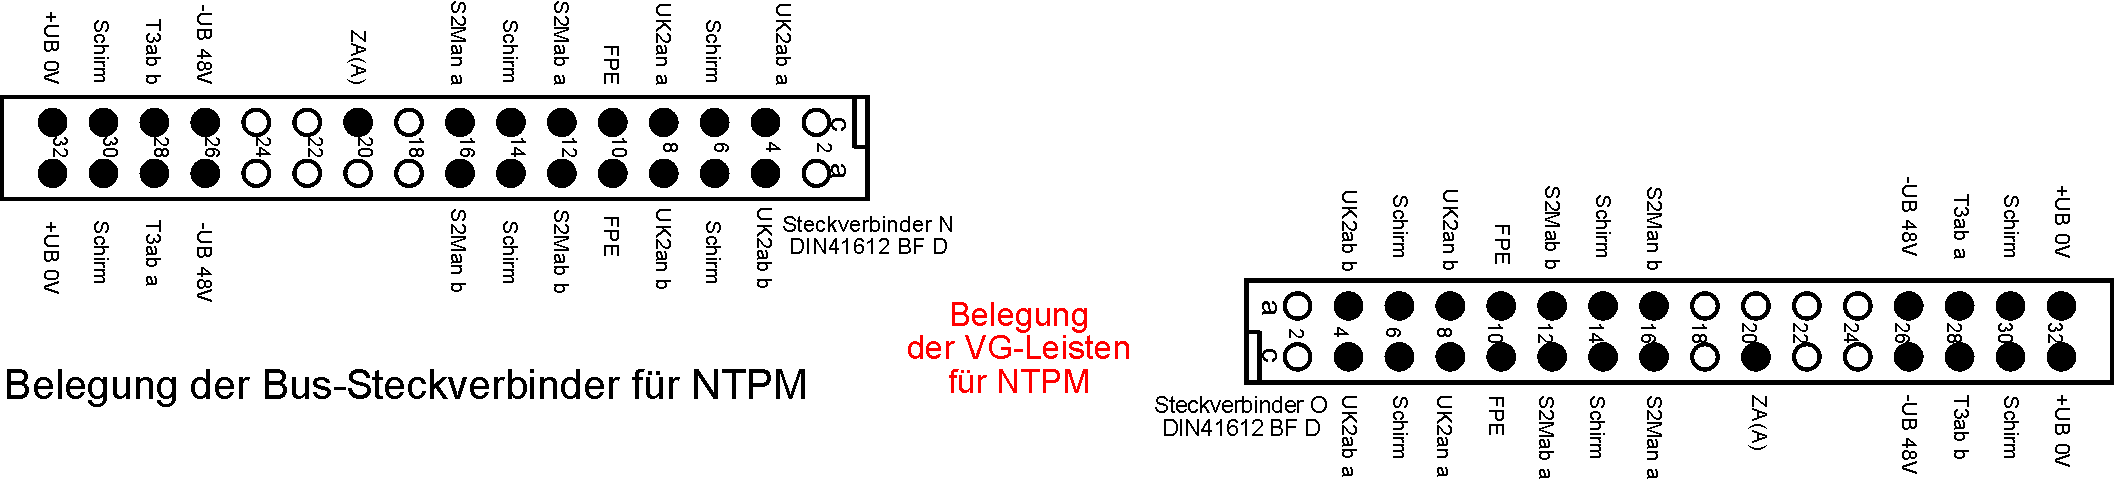 DESK-GmbH_Belegung-der-Bus-Steckverbinder-für-NTPM